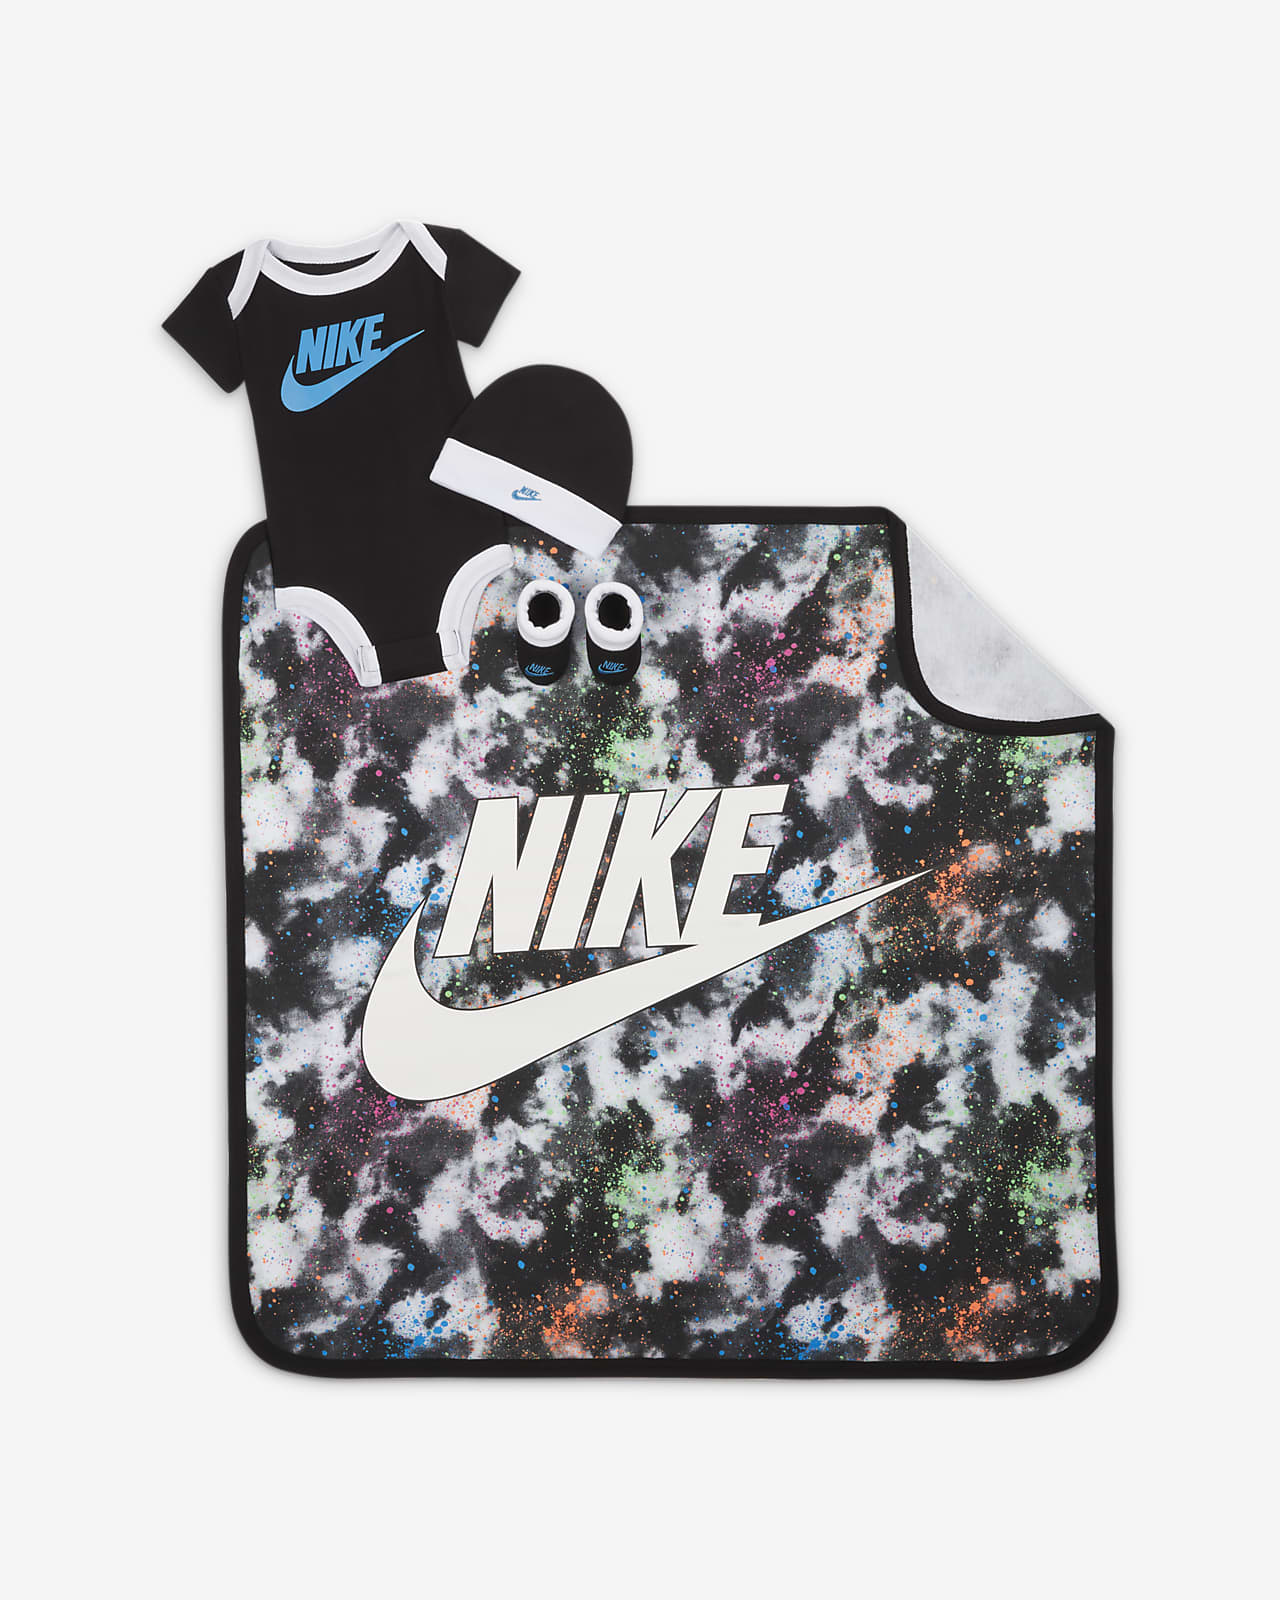 Nike Baby (0-6M) 4-Piece Box Set (w/ Blanket)